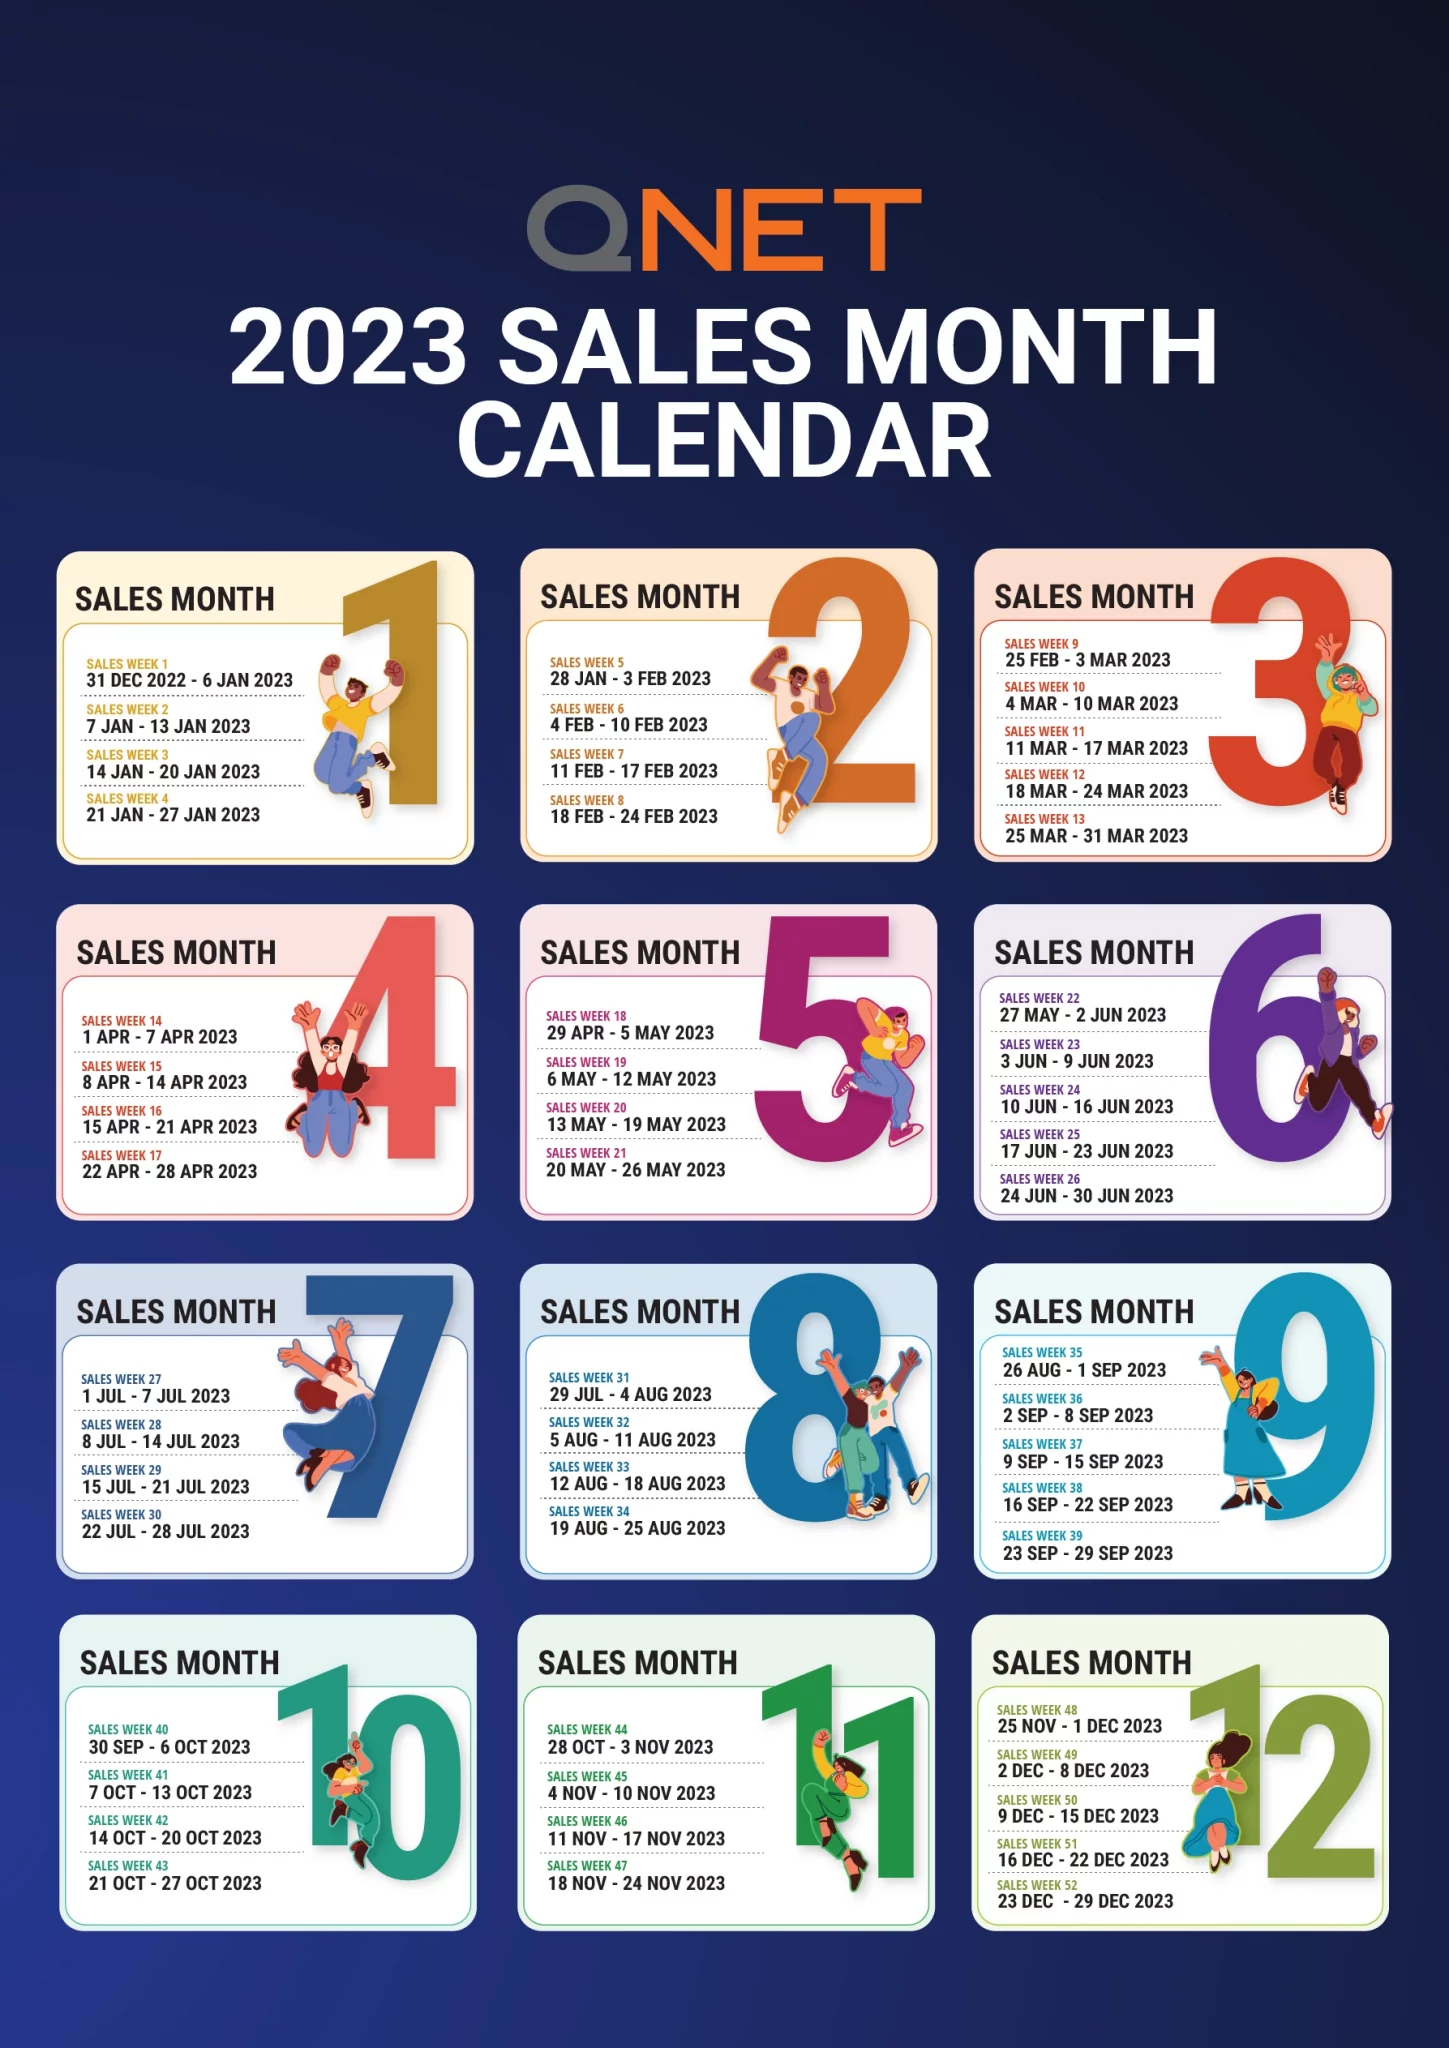 QNET's 2023 sales month calendar